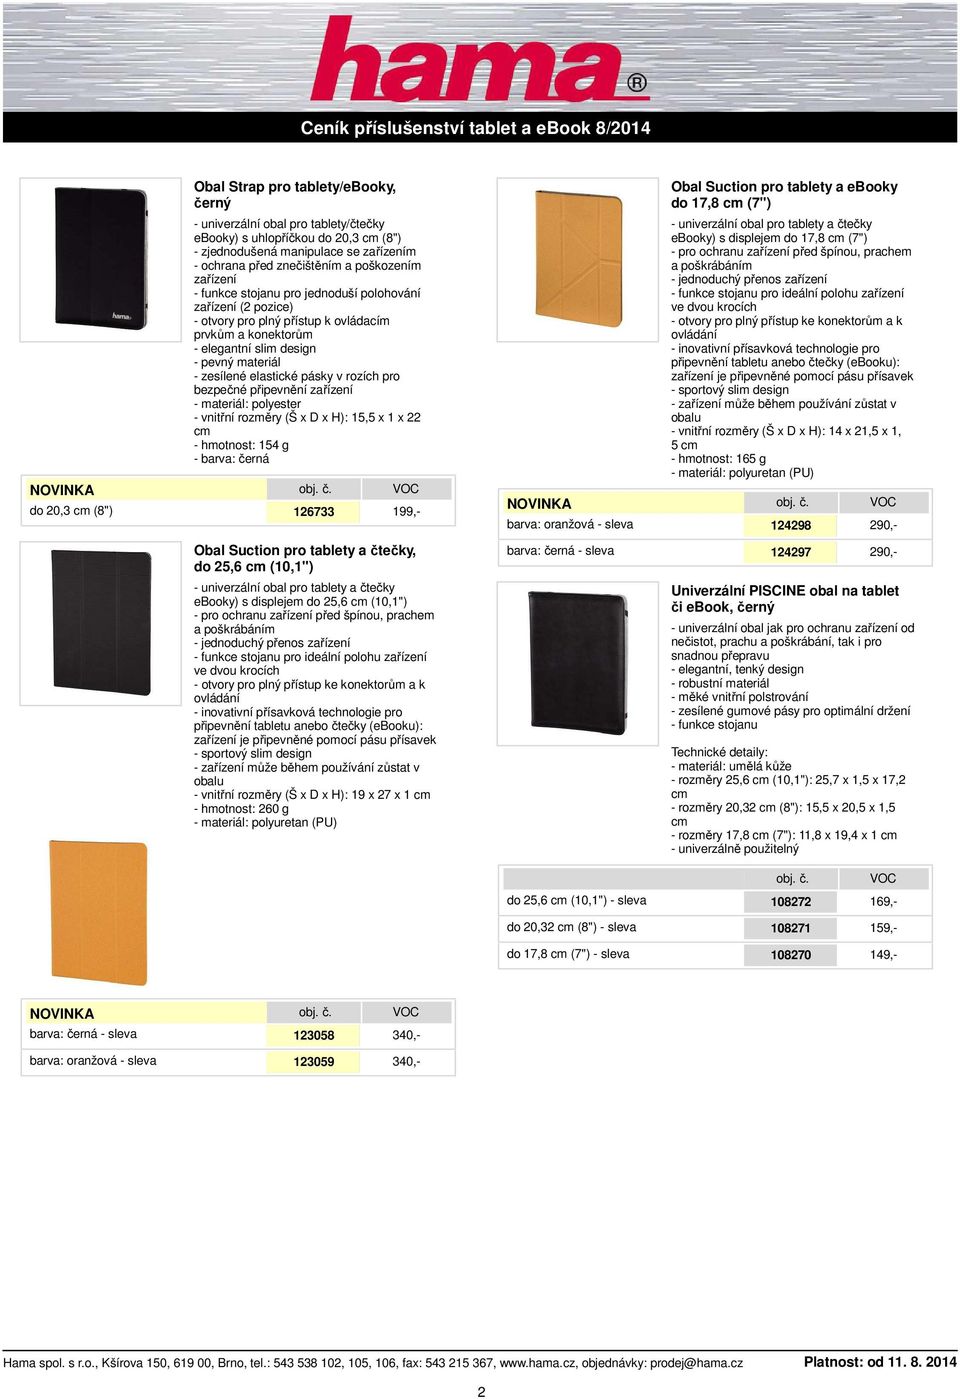 design - pevný materiál - zesílené elastické pásky v rozích pro bezpečné připevnění zařízení - vnitřní rozměry (Š x D x H): 15,5 x 1 x 22 - hmotnost: 154 g 126733 199,- barva: oranžová - -